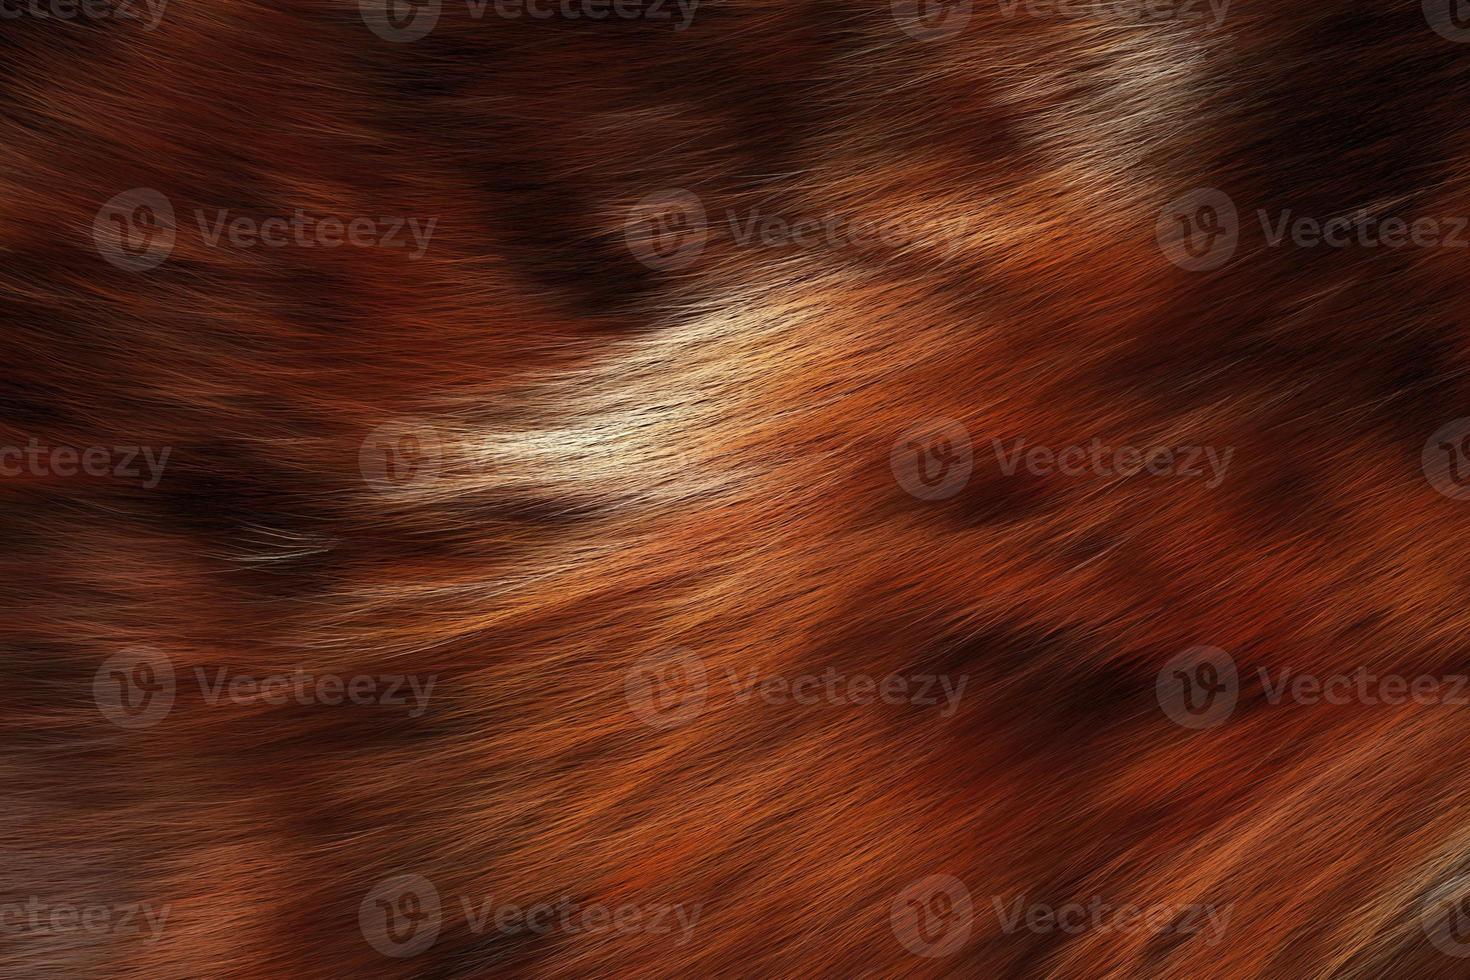 textura de lã de animais selvagens. fundo de pele de animal foto